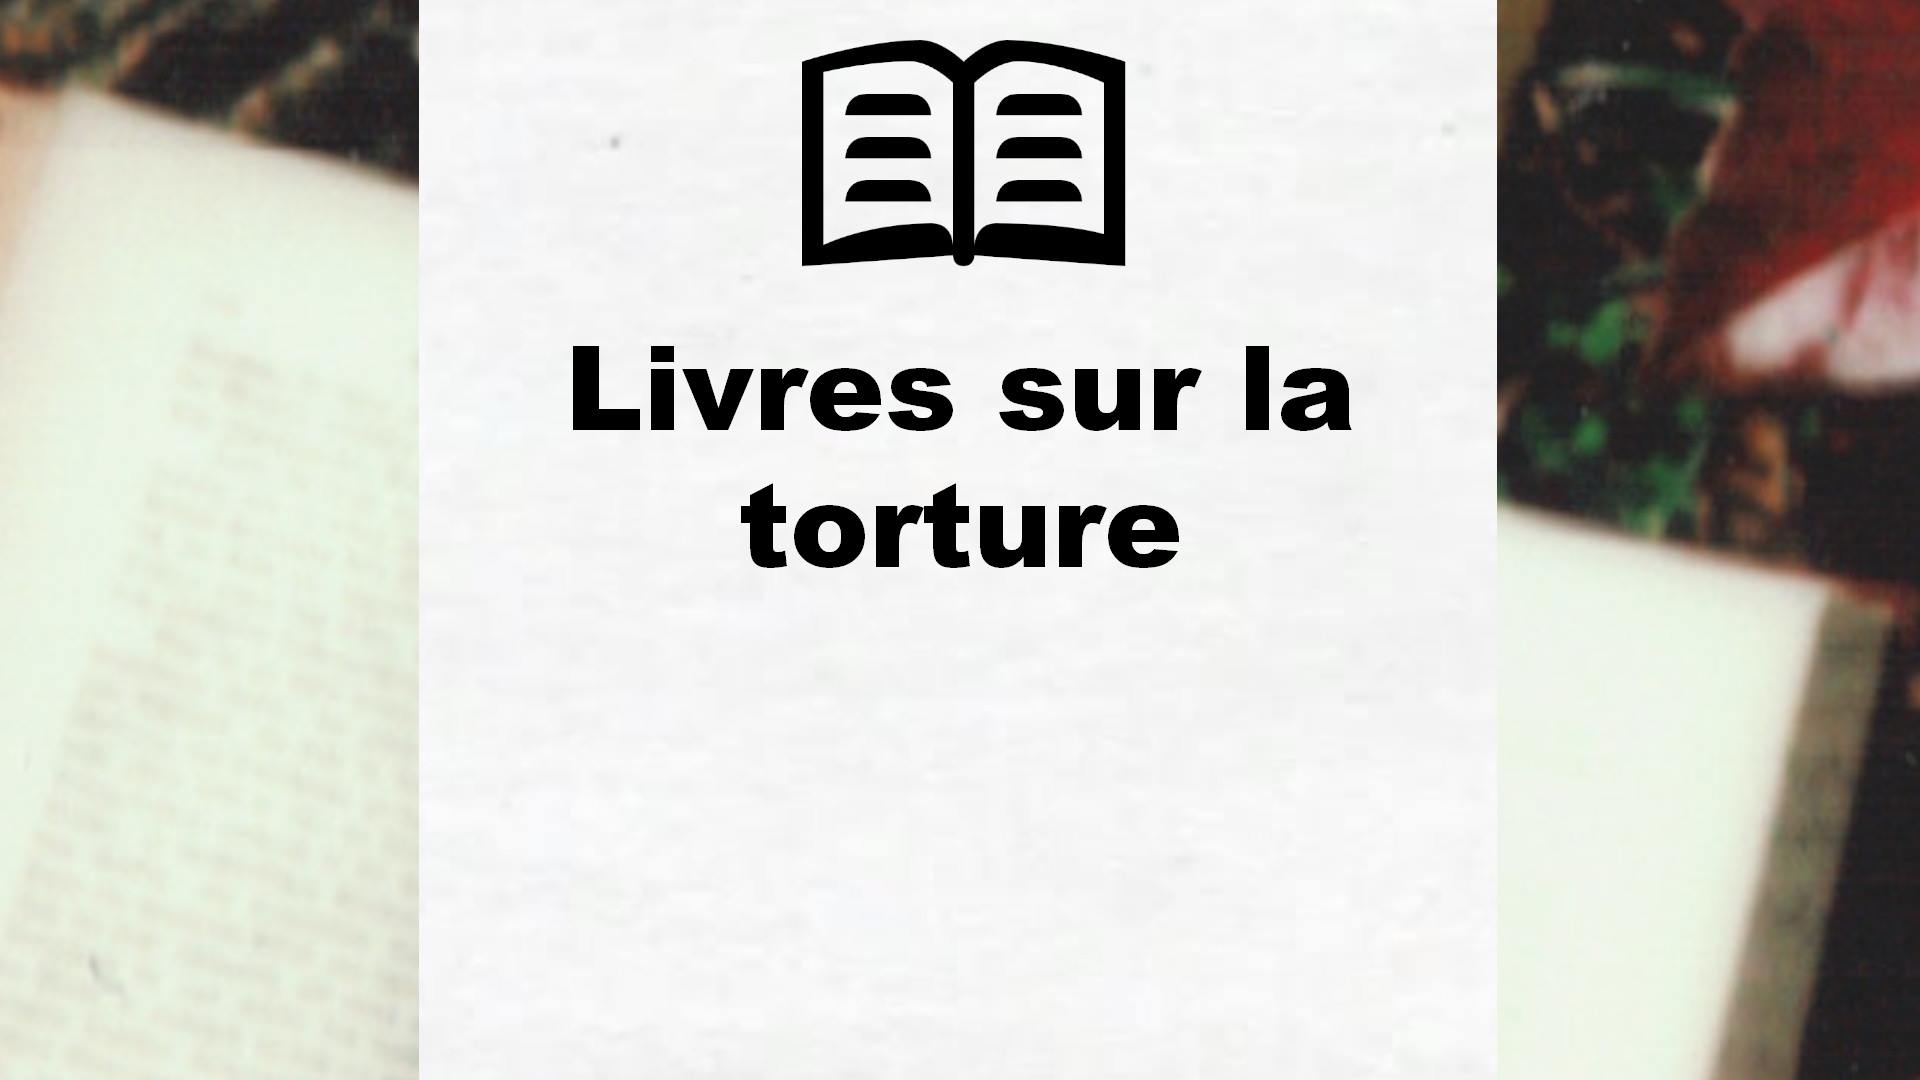 Livres sur la torture